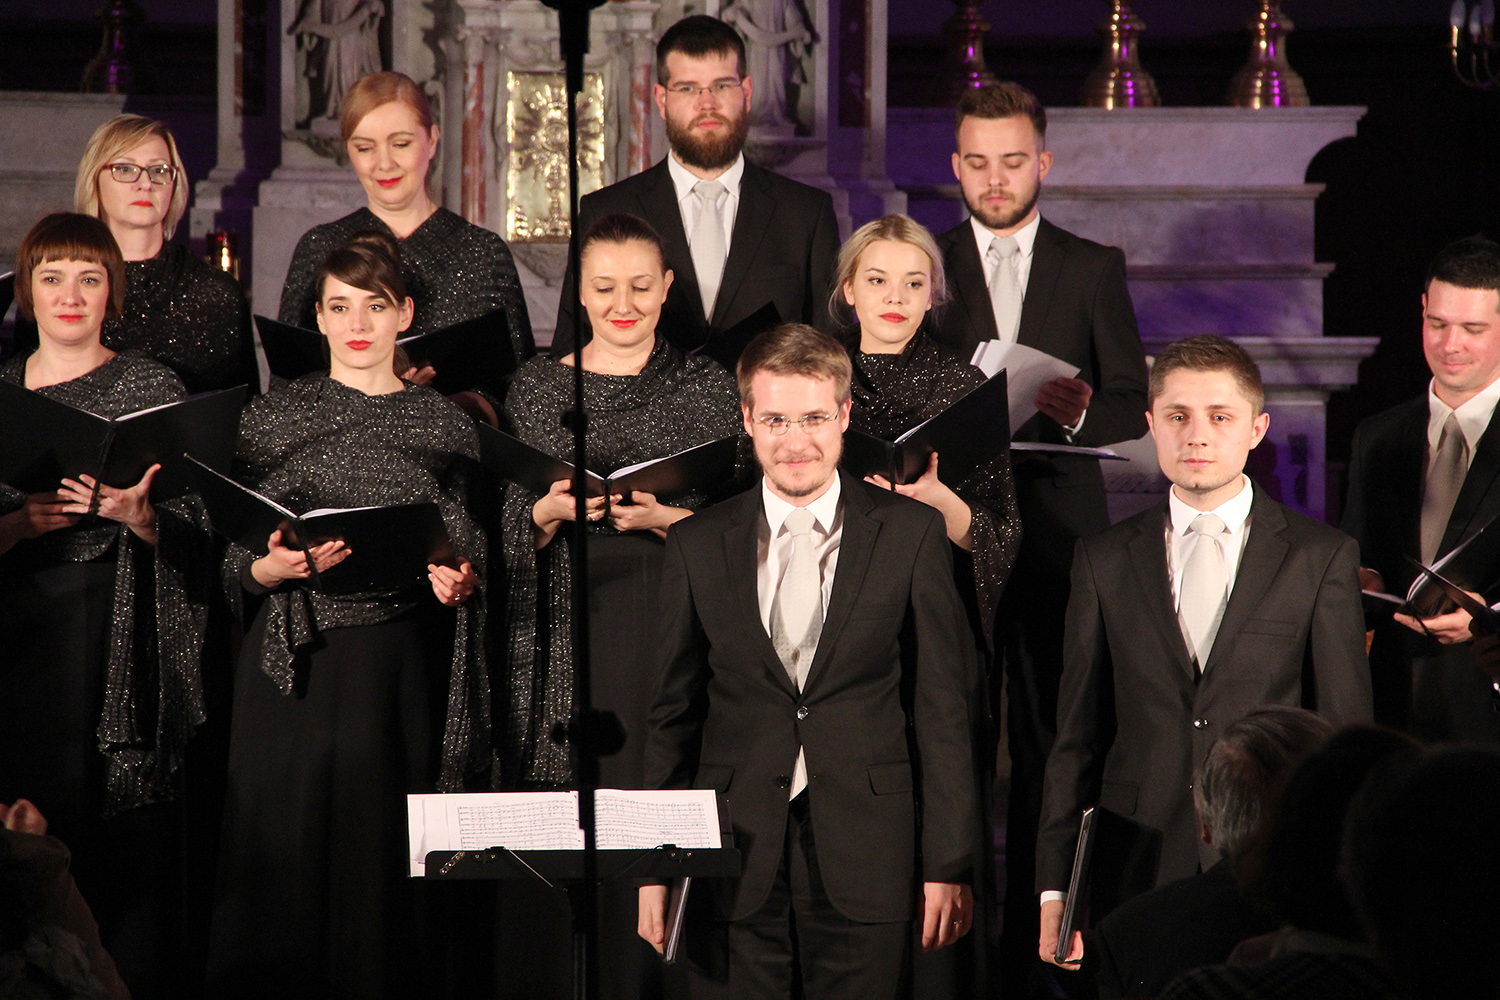 Komorni zbor Ivan Filipović izuzetnom izvedbom u sklopu "Dana kršćanske kulture" u Splitu oduševio publiku